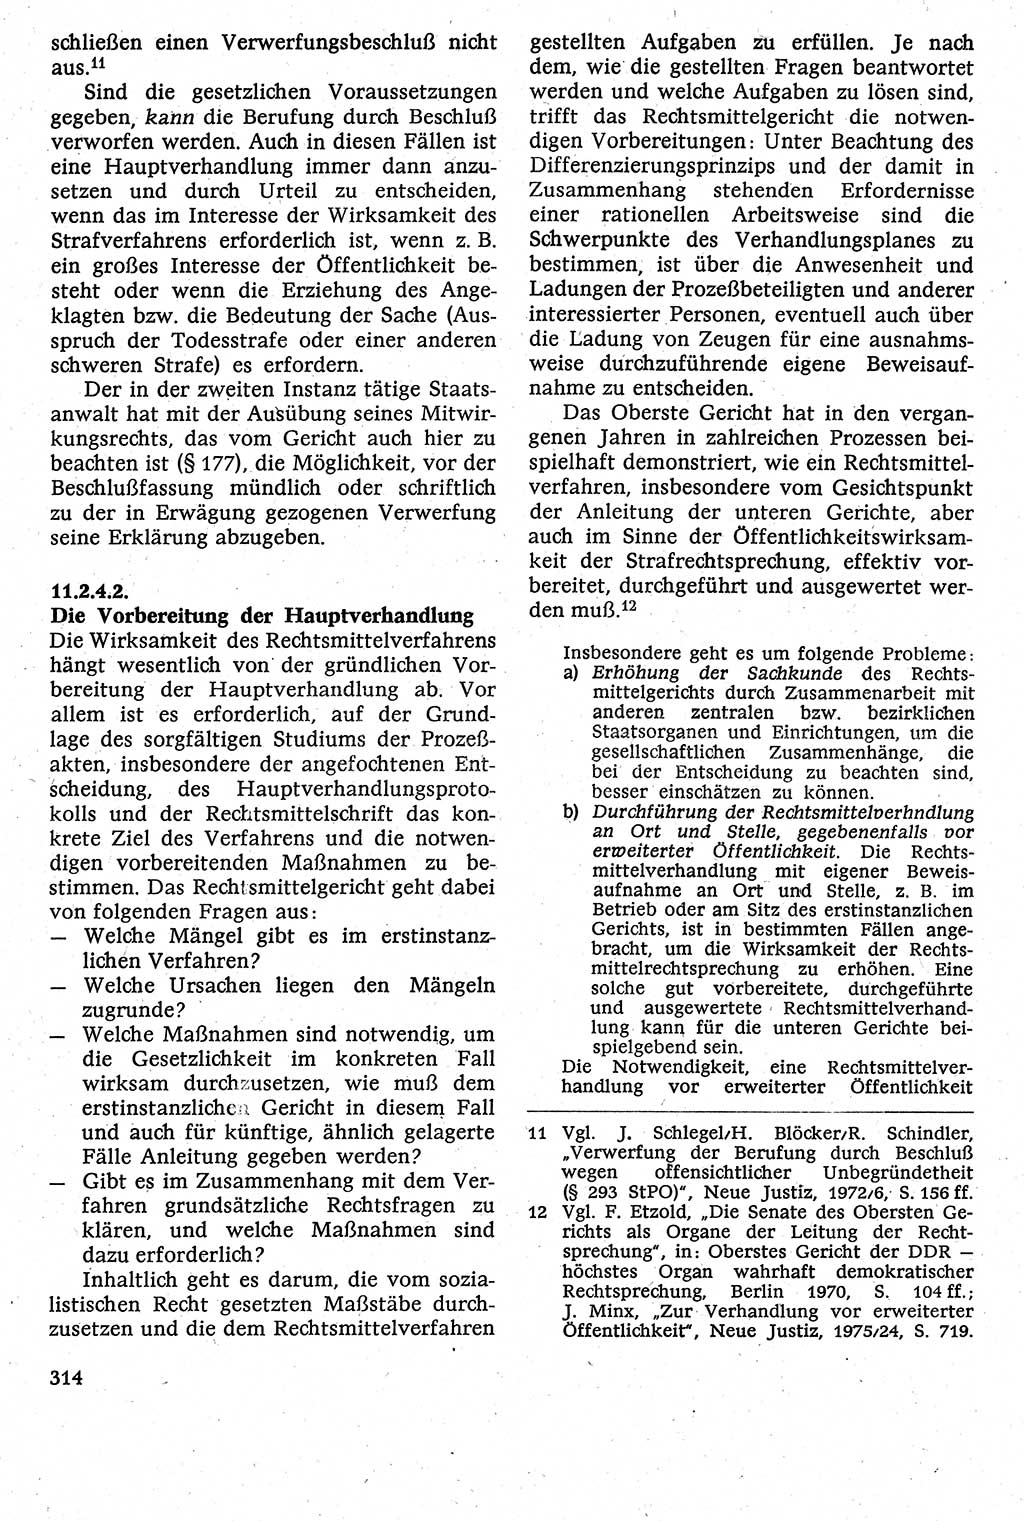 Strafverfahrensrecht [Deutsche Demokratische Republik (DDR)], Lehrbuch 1982, Seite 314 (Strafverf.-R. DDR Lb. 1982, S. 314)